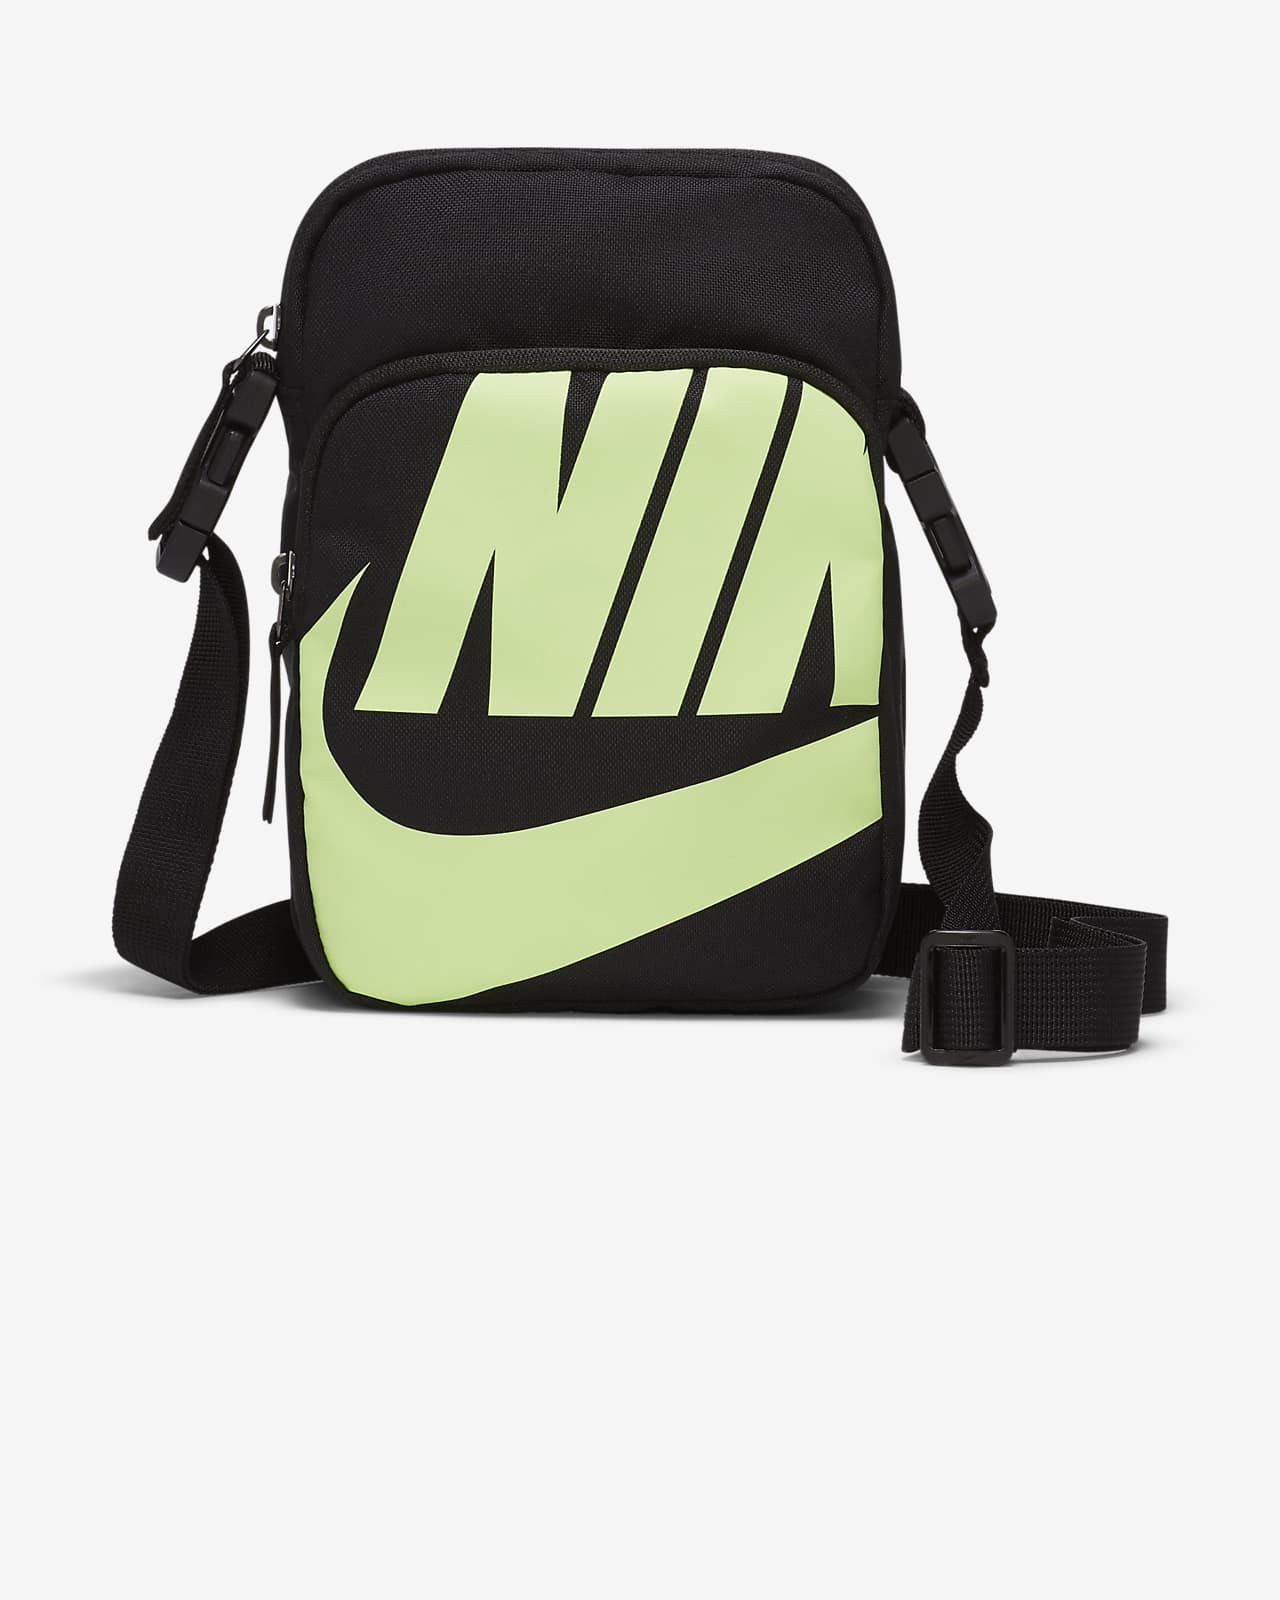 nike heritage 2.0 black shoulder bag